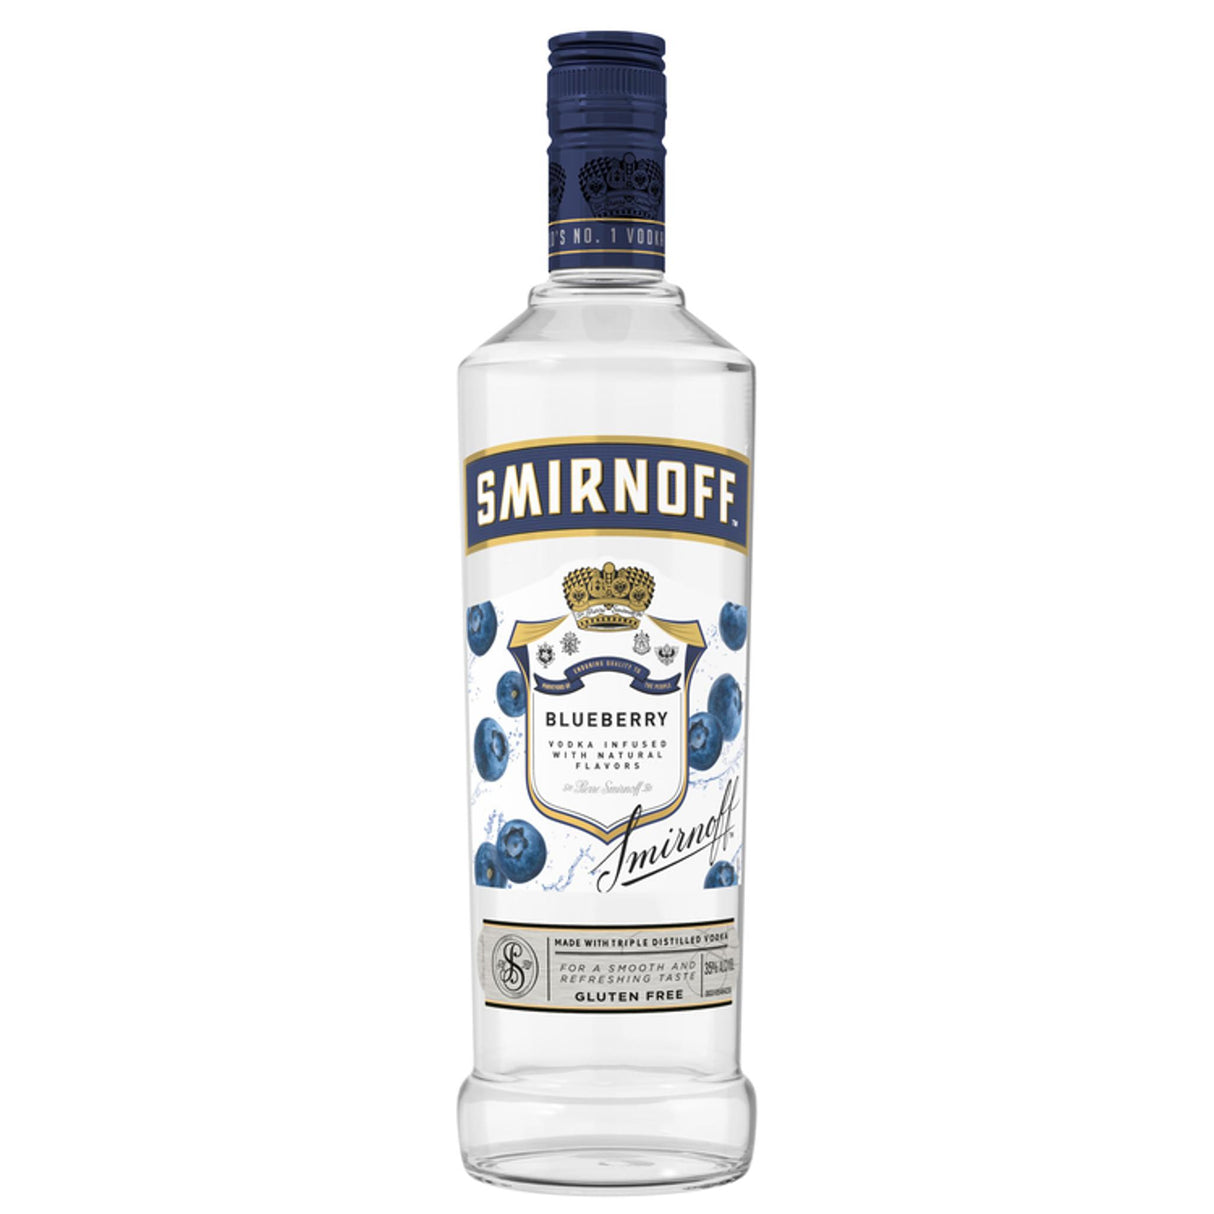 Smirnoff Blueberry Flavored Vodka - Liquor Geeks